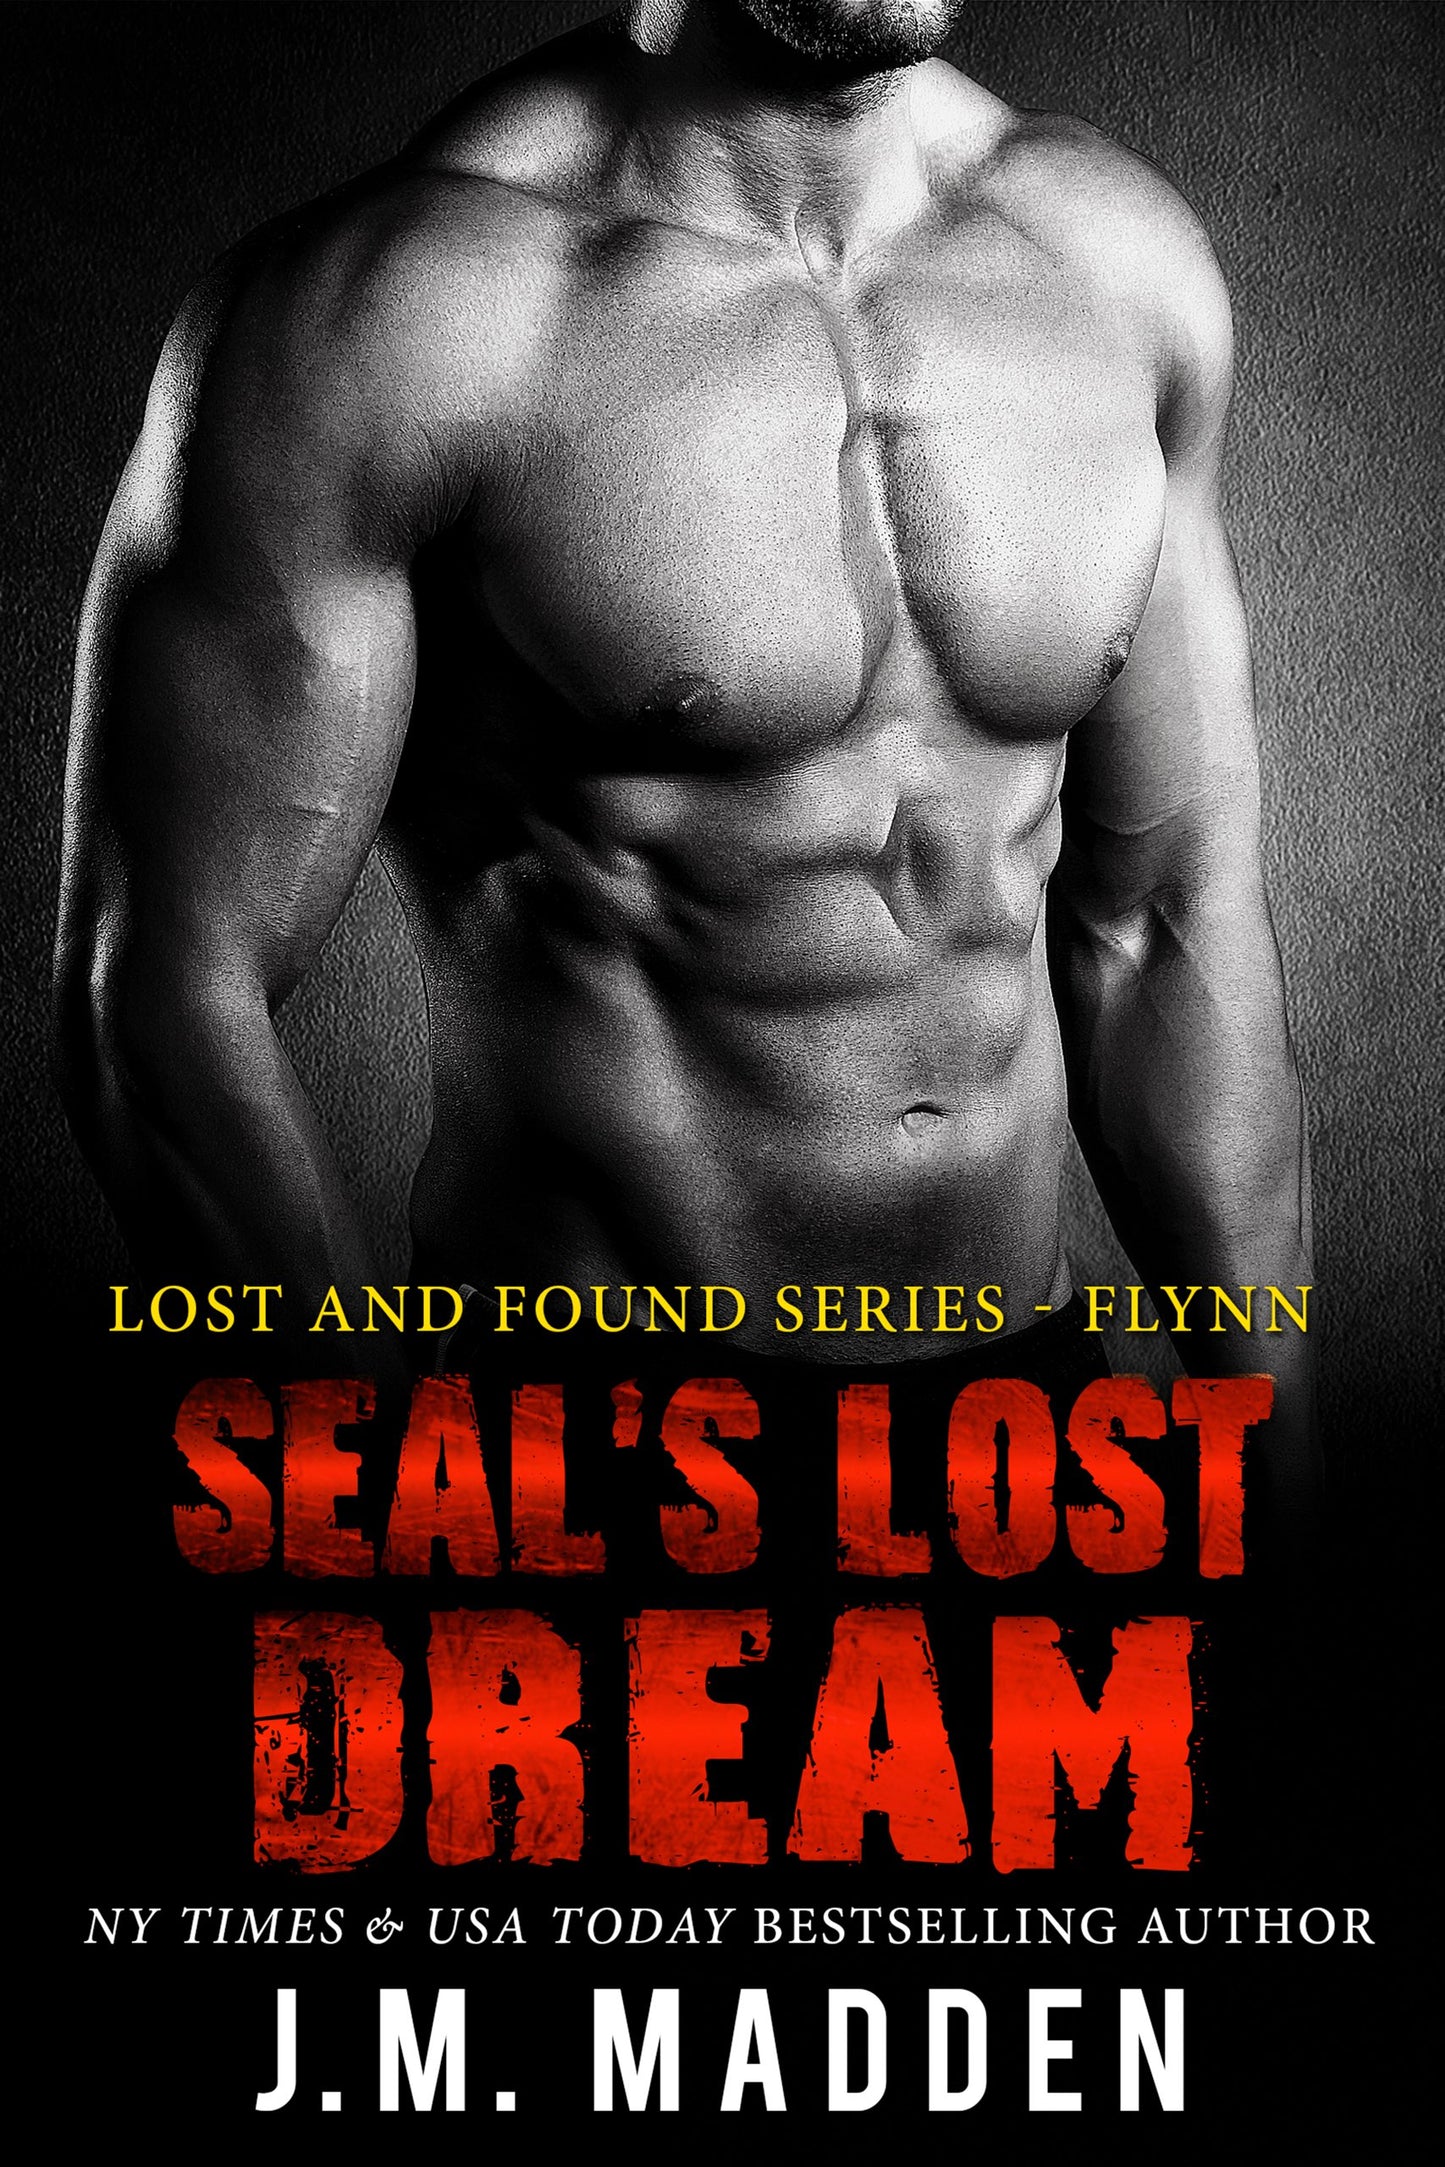 SEAL's Lost Dream